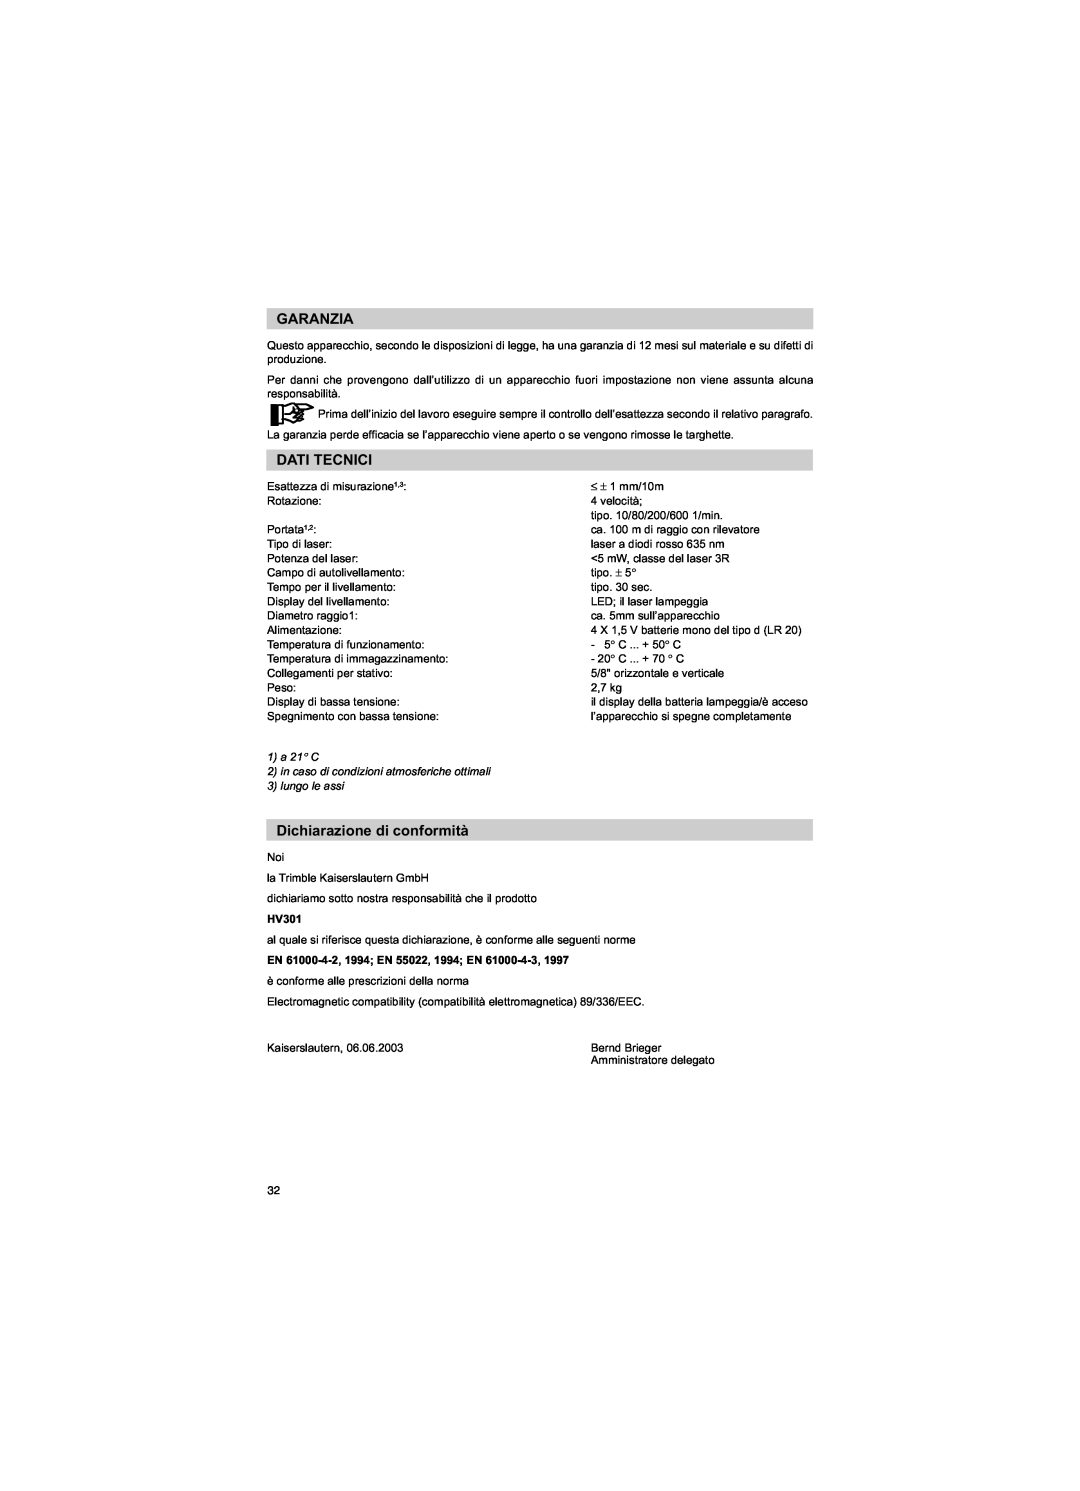 Trimble Outdoors HV301 manual Garanzia, Dati Tecnici, Dichiarazione di conformità, 1a 21 C, 3lungo le assi 